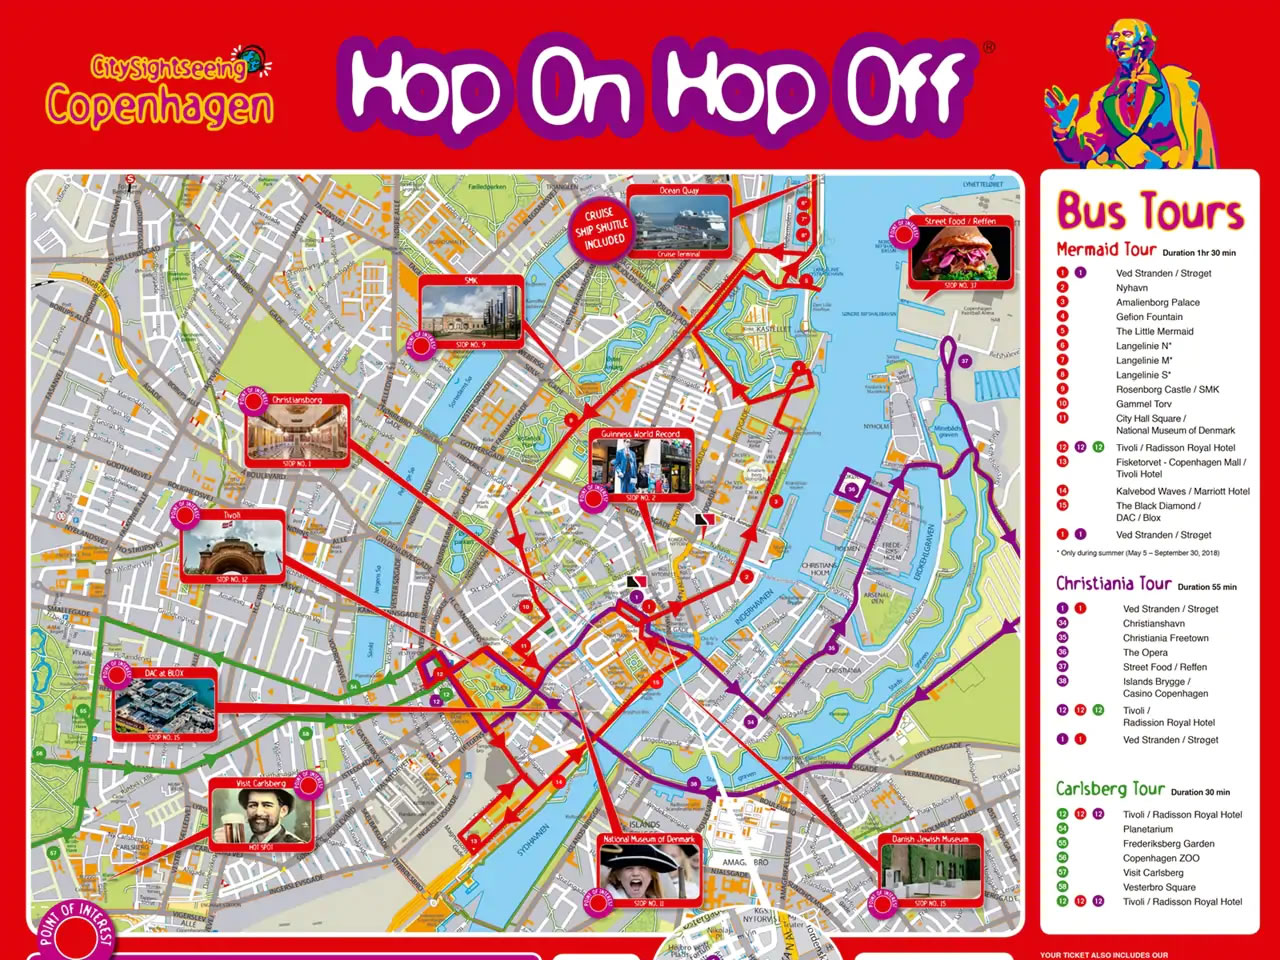 Copenhagen Hop-On Hop-Off Bus Tour Map